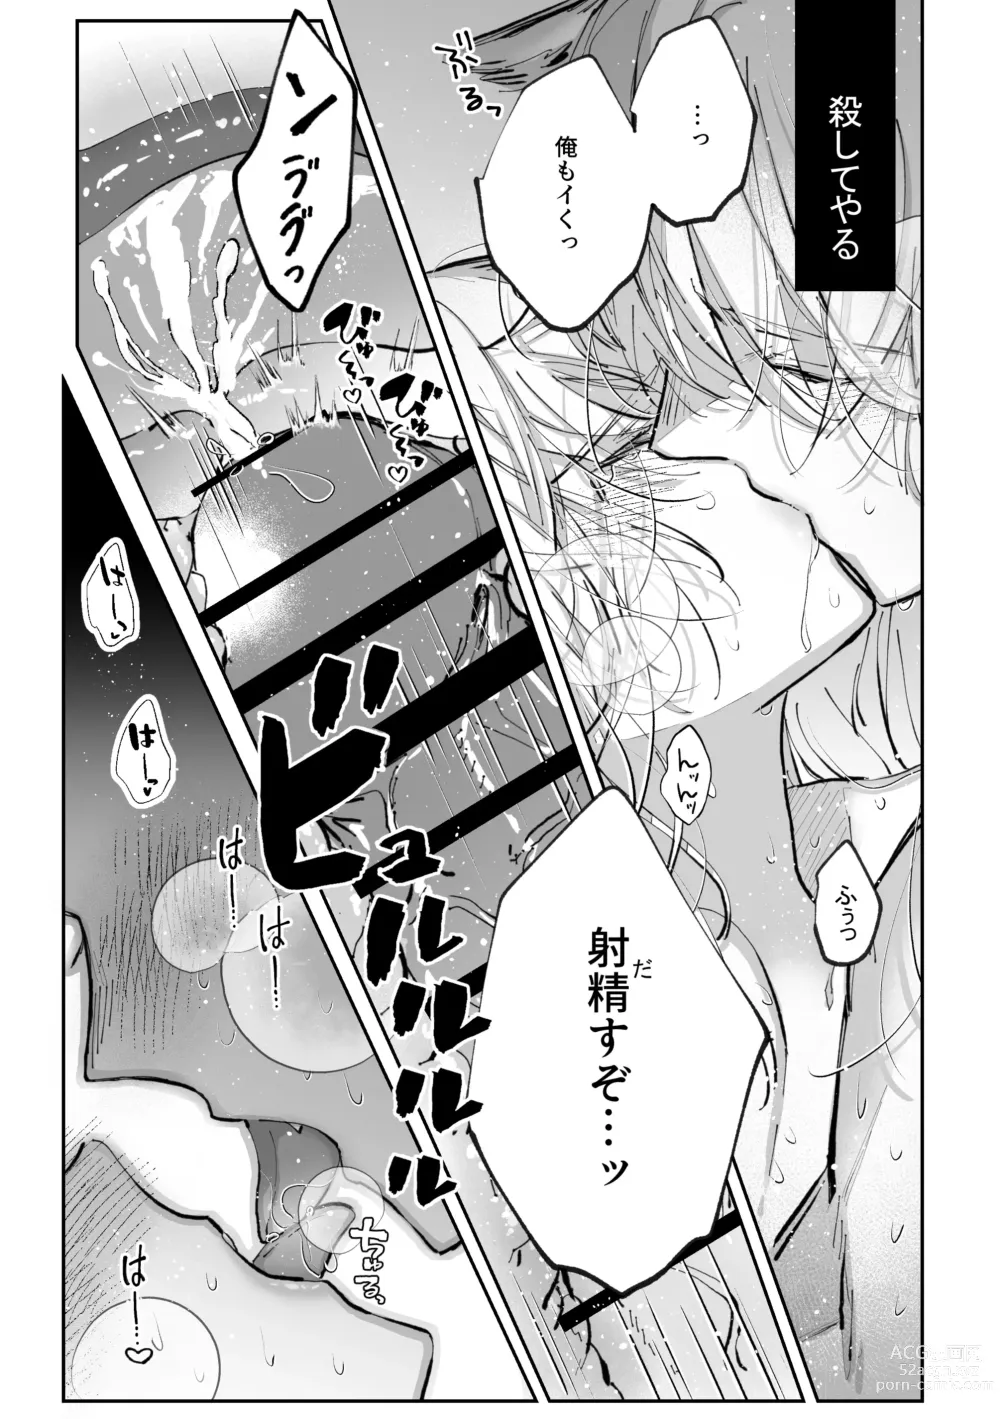 Page 73 of doujinshi Datto wa Ookami no Ai wo Shiru